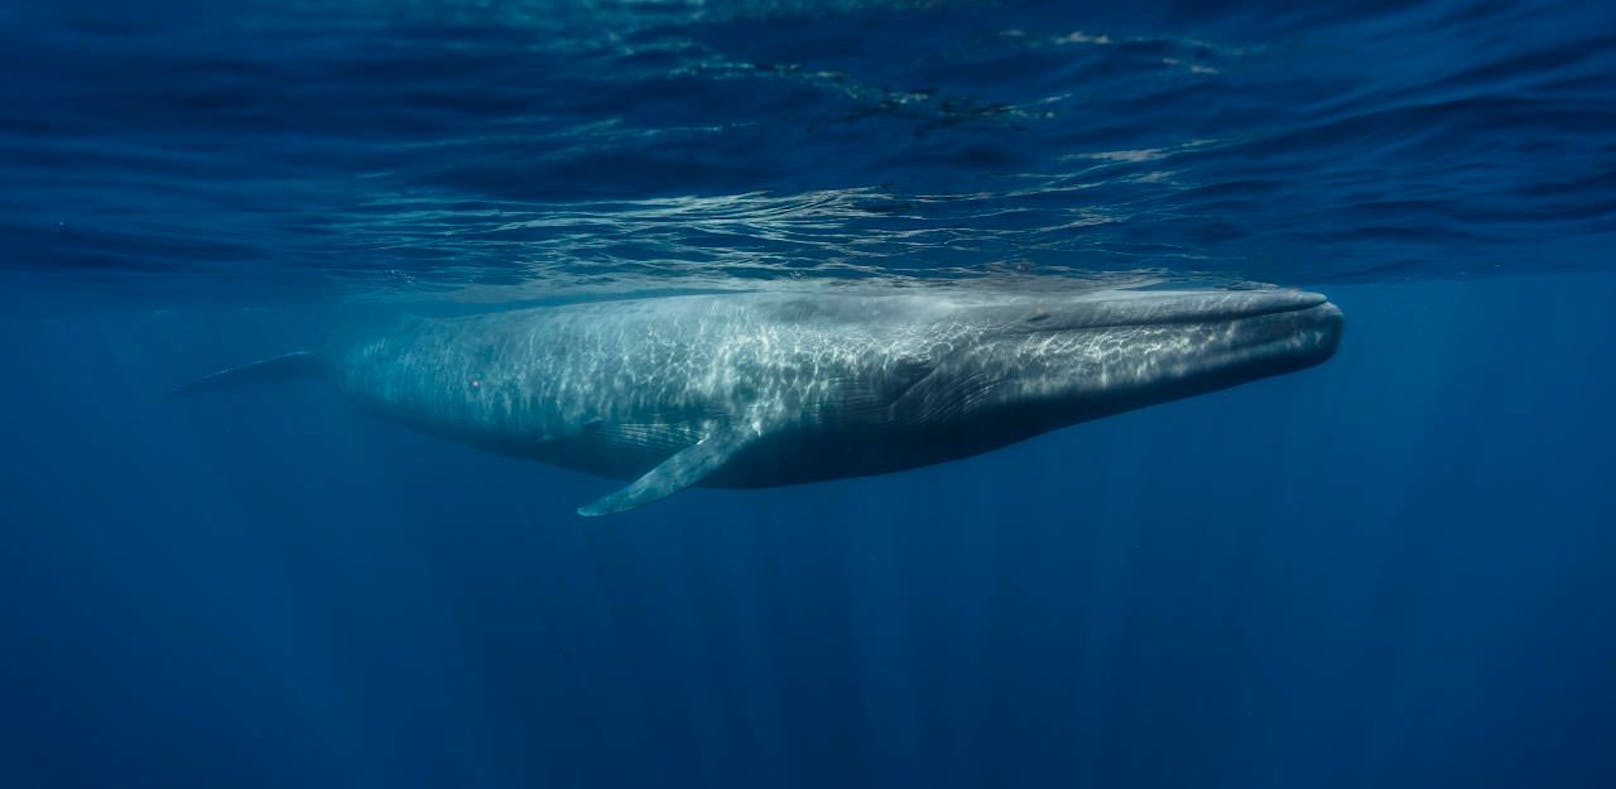 Riesen, wie der Blauwal, scheinen immun gegen Krebs zu sein. Wie kommt das?